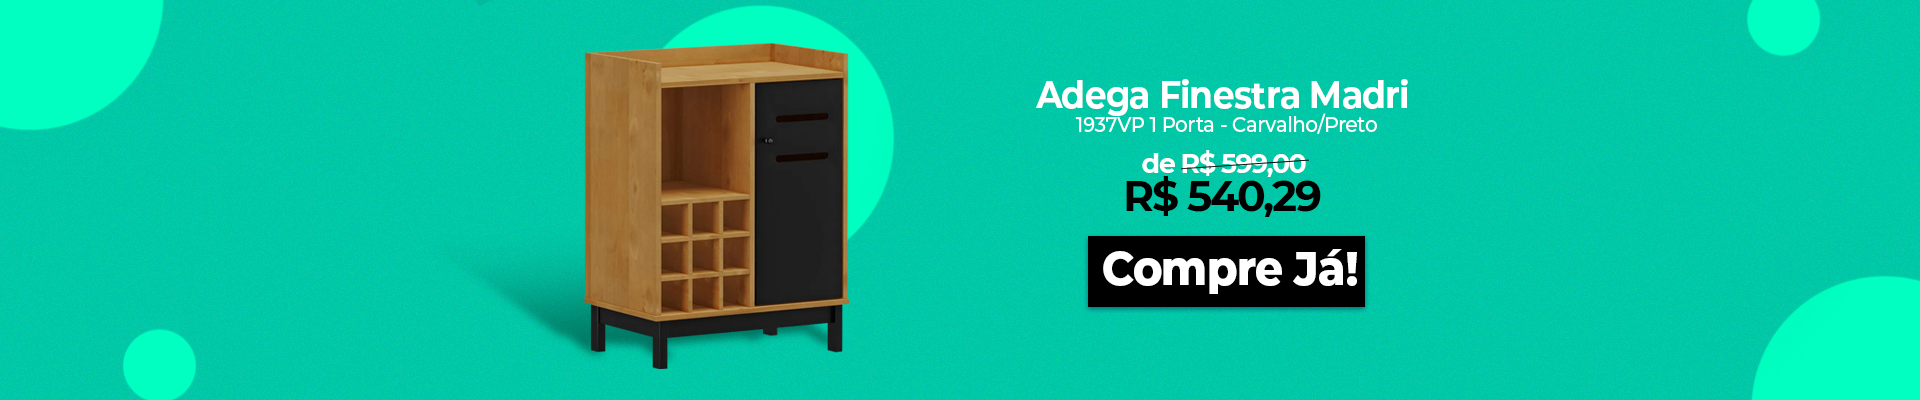 Adega-Finestra-Madri-1937VP-Desktop